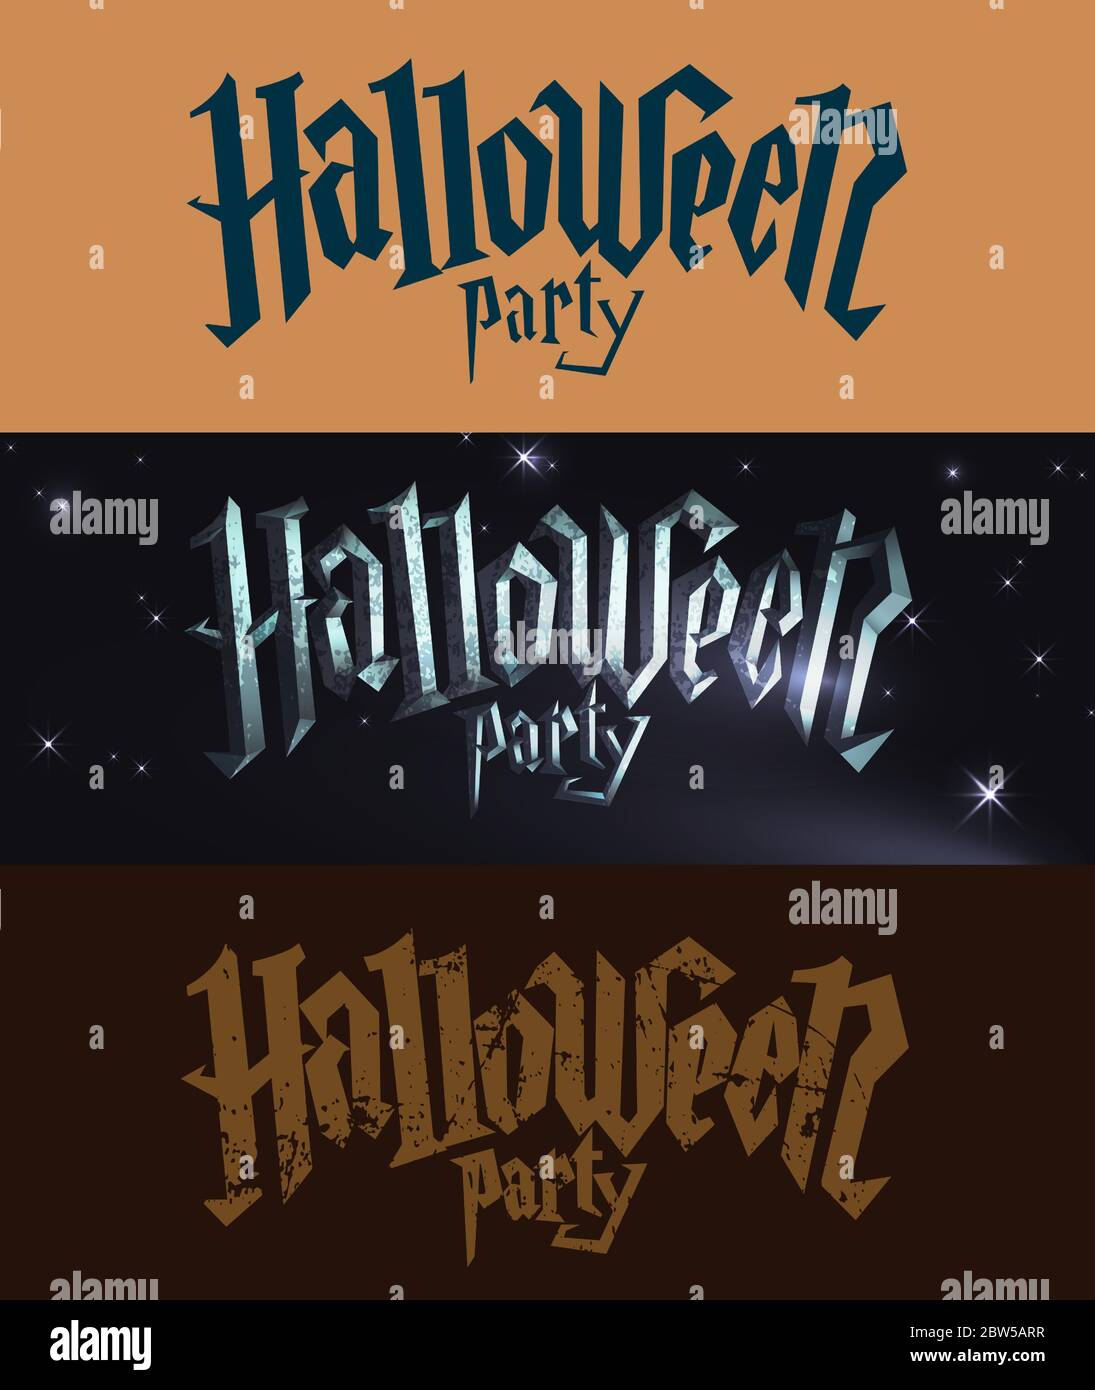 Collezione di logo della festa di Halloween. Illustrazione Vettoriale